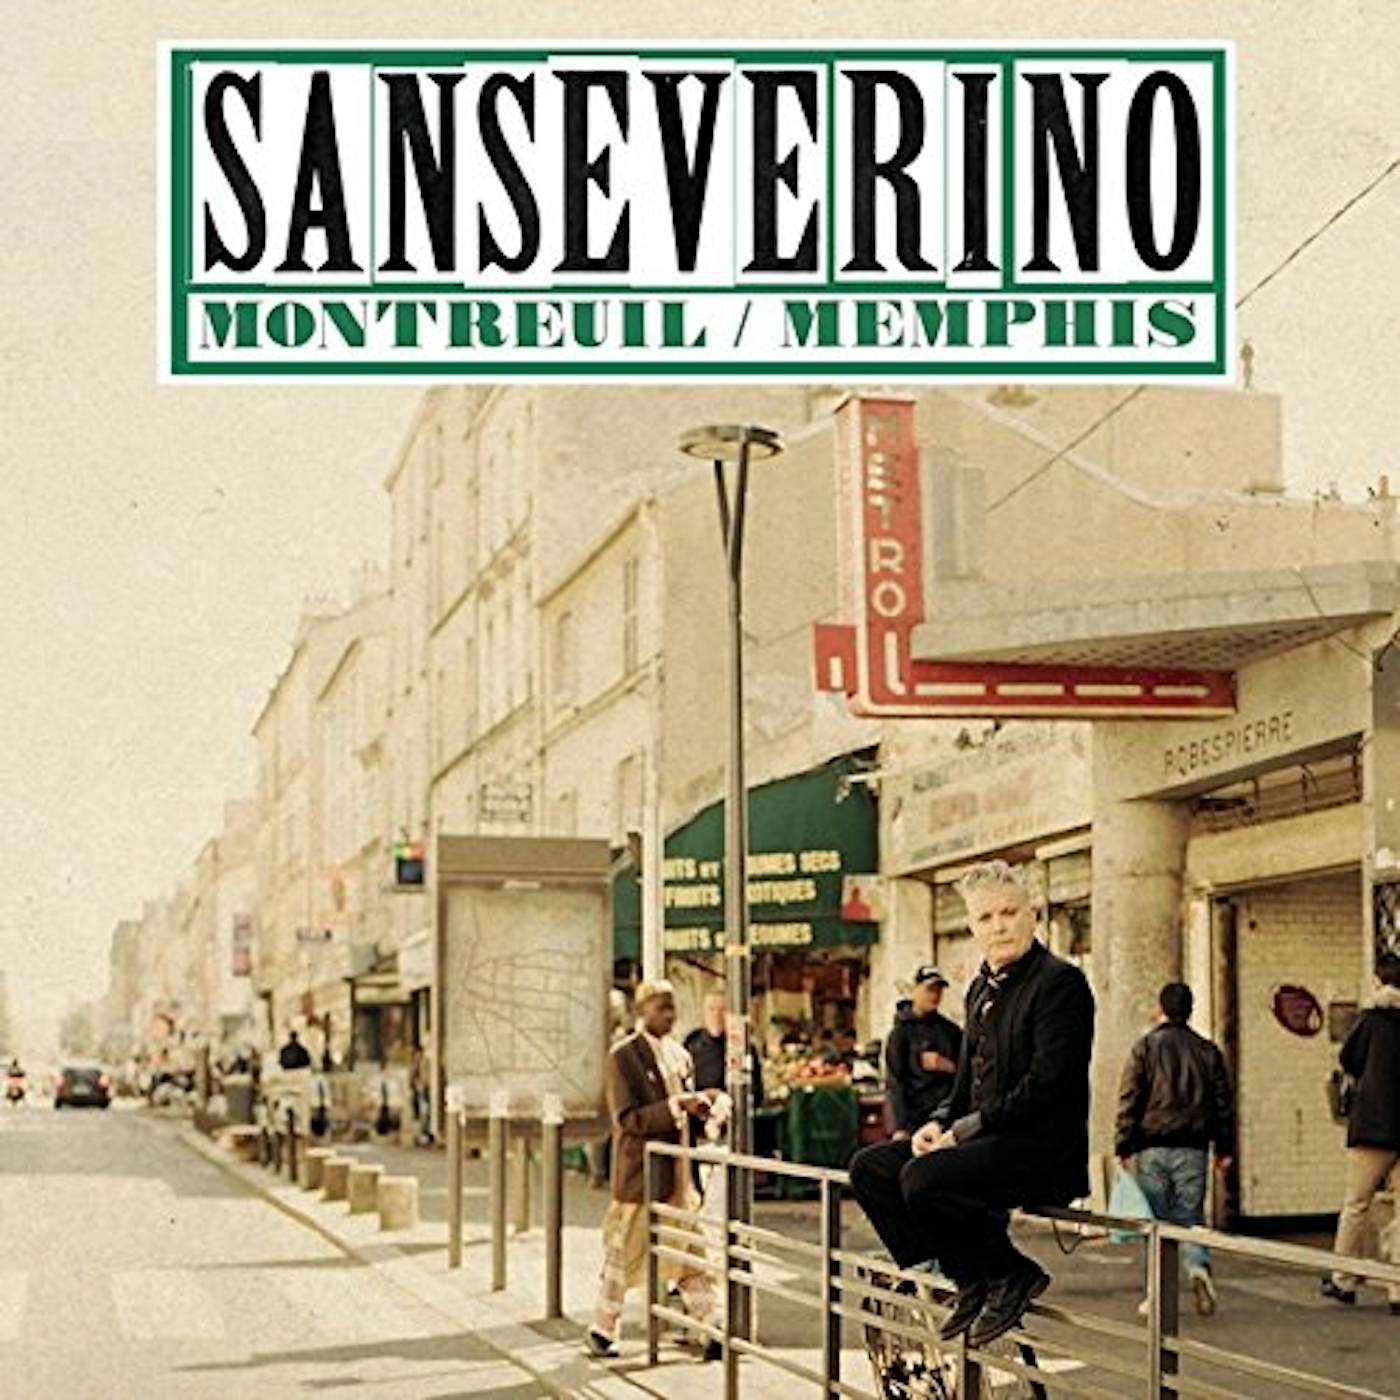 Sanseverino MONTREUIL / MEMPHIS CD